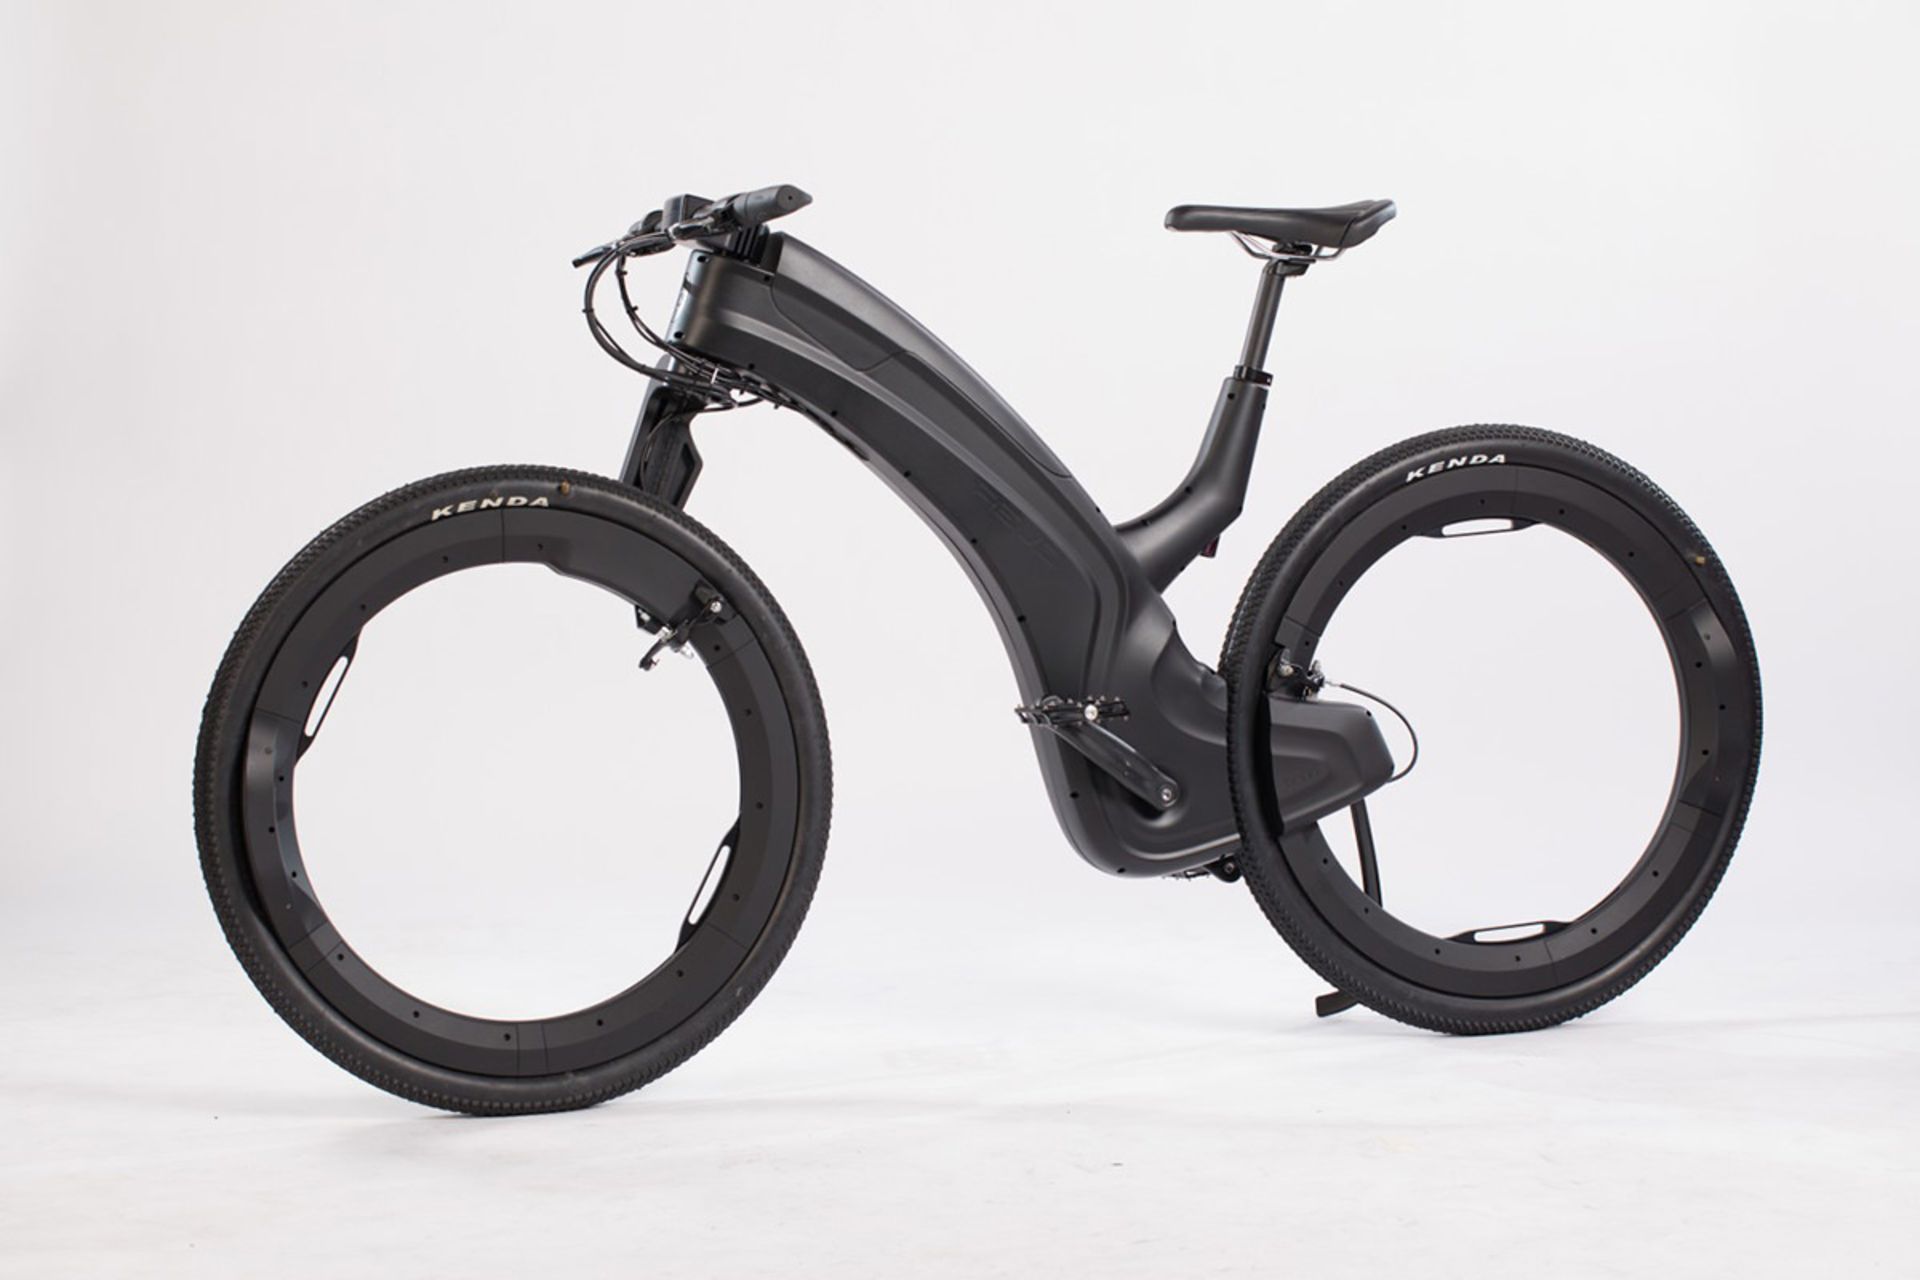 نمای جانبی دوچرخه برقی بدون توپی ریوو / Hubless Reevo ebike سیاه رنگ